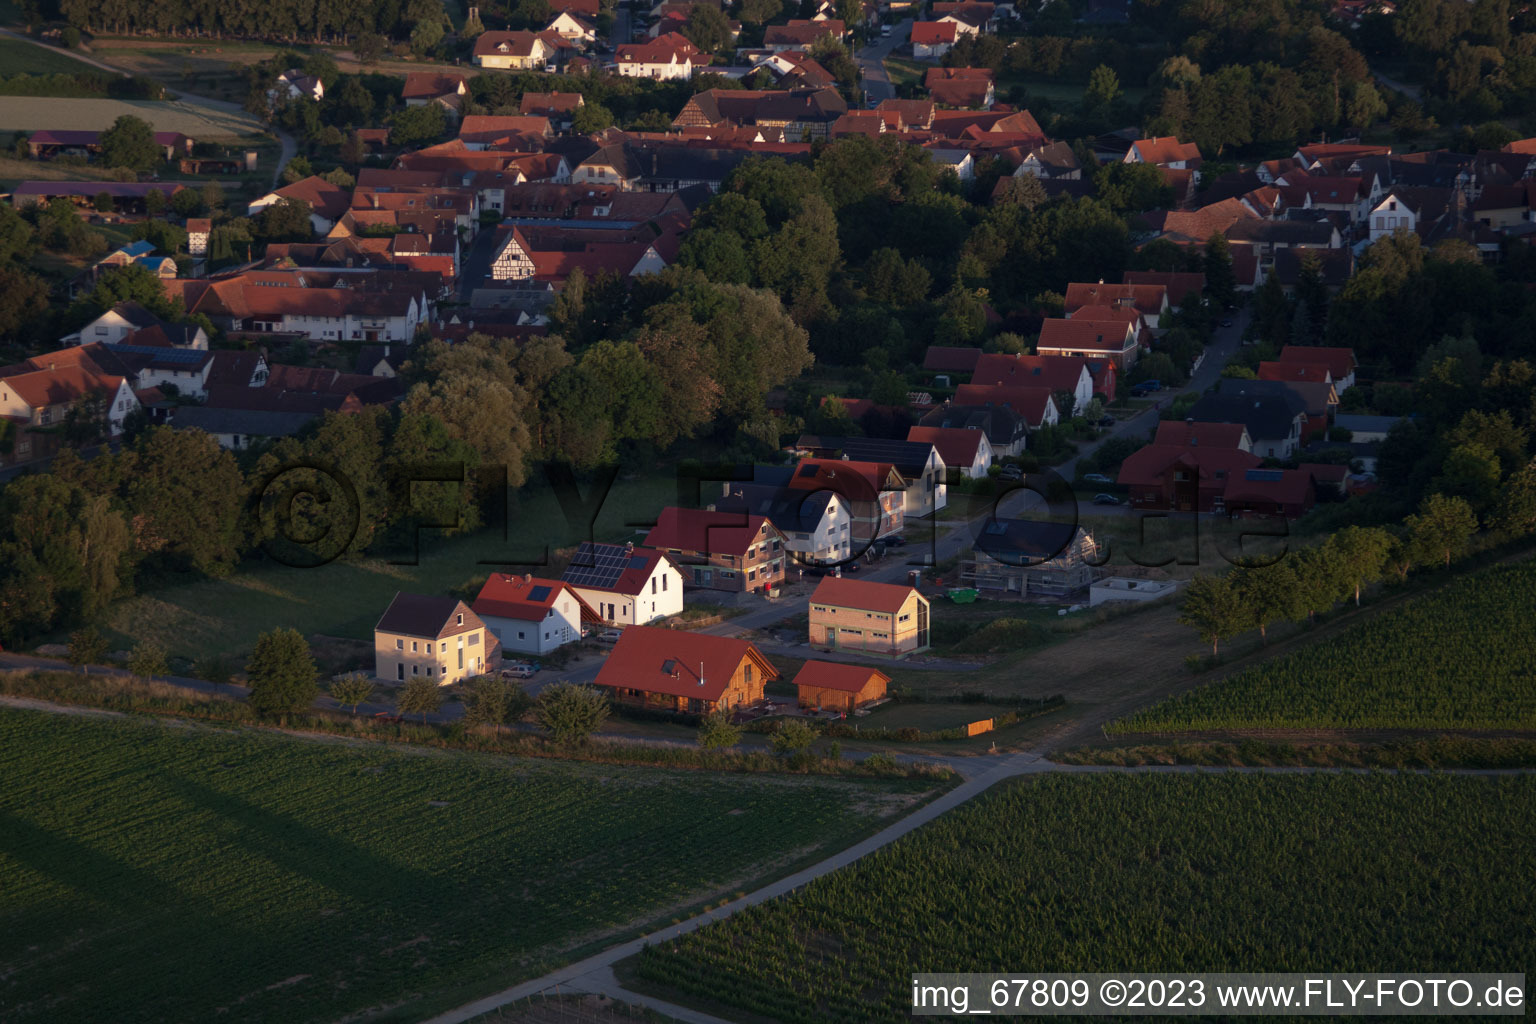 Dierbach dans le département Rhénanie-Palatinat, Allemagne vu d'un drone